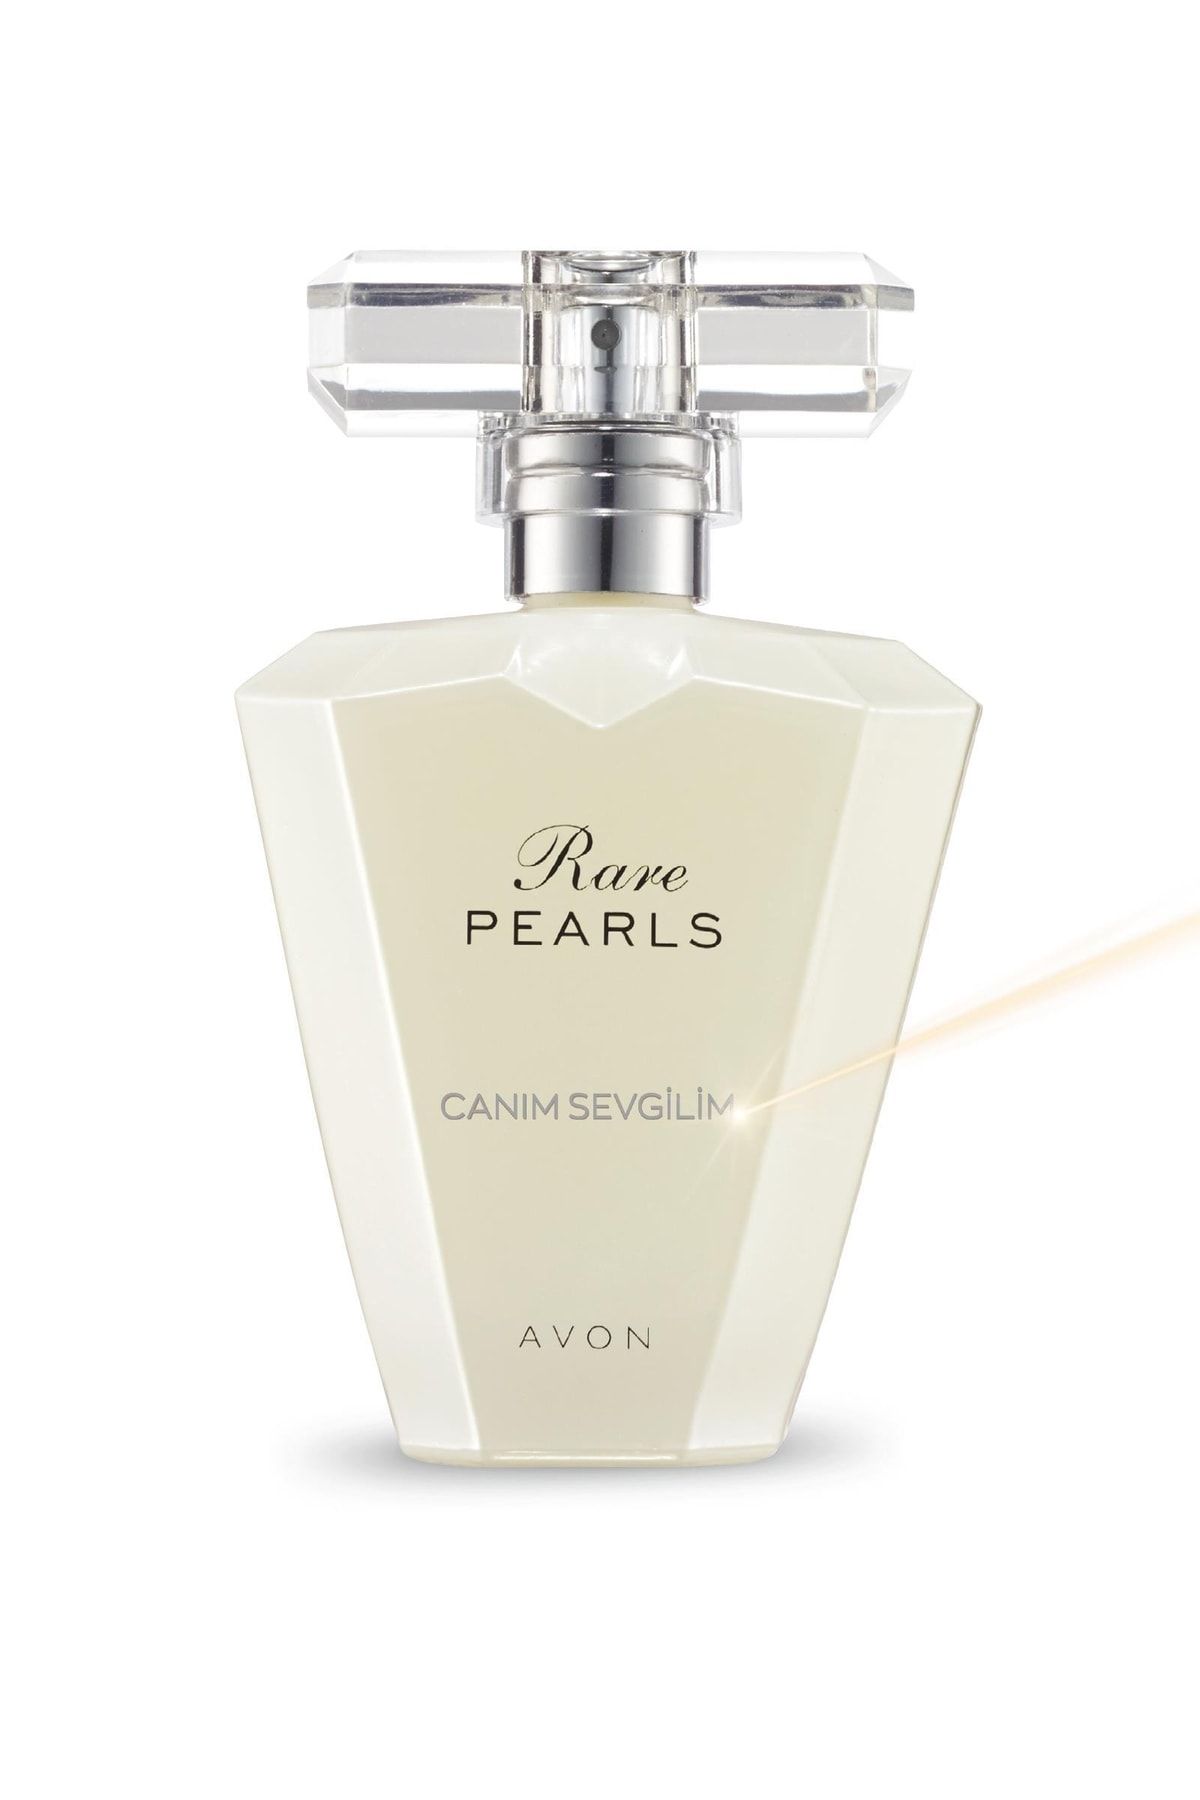 Avon Rare Pearls Canım Sevgilim Yazılı Kadın Parfümü Edp 50 Ml.